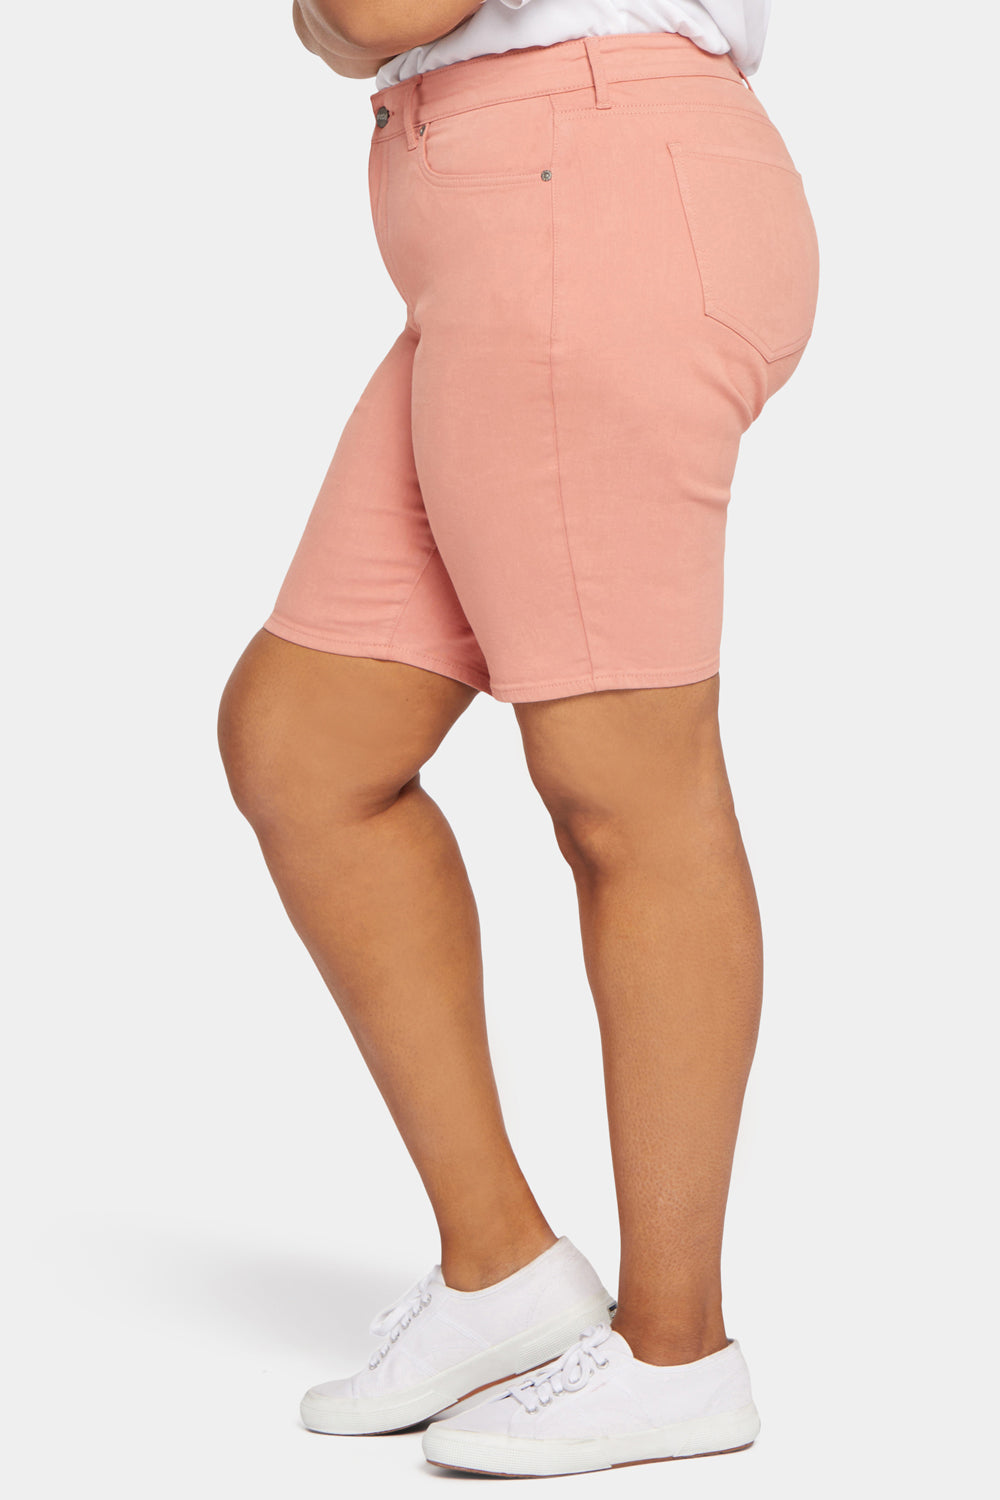 NYDJ Briella 11 Inch Denim Shorts In Plus Size  - Terra Cotta